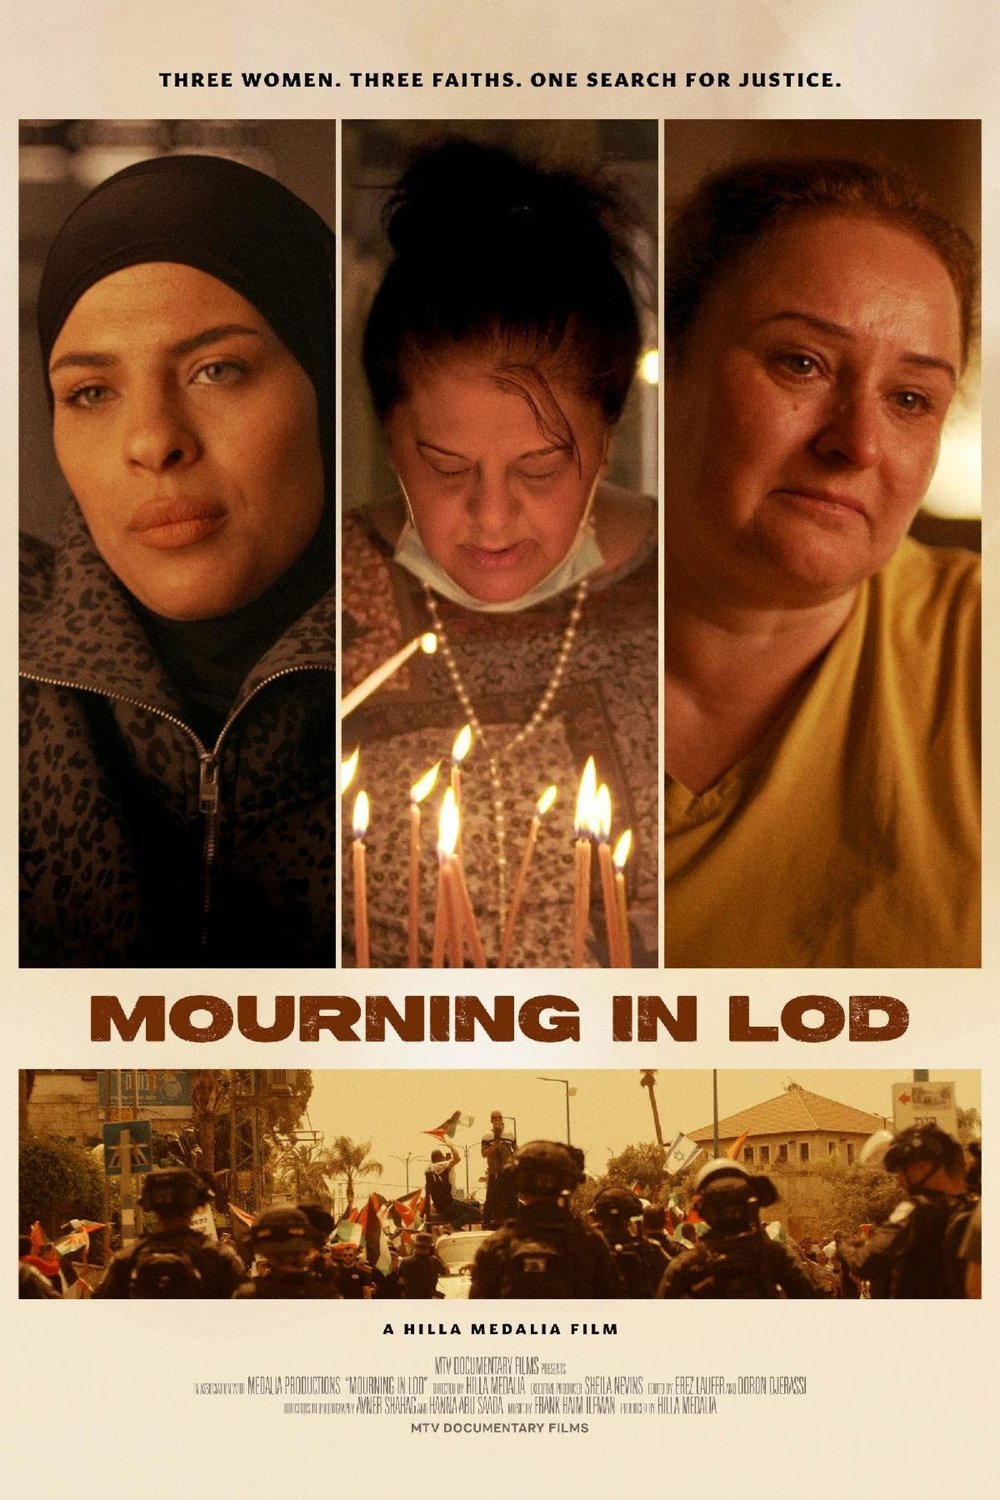 L'affiche originale du film Mourning in Lod en hébreu